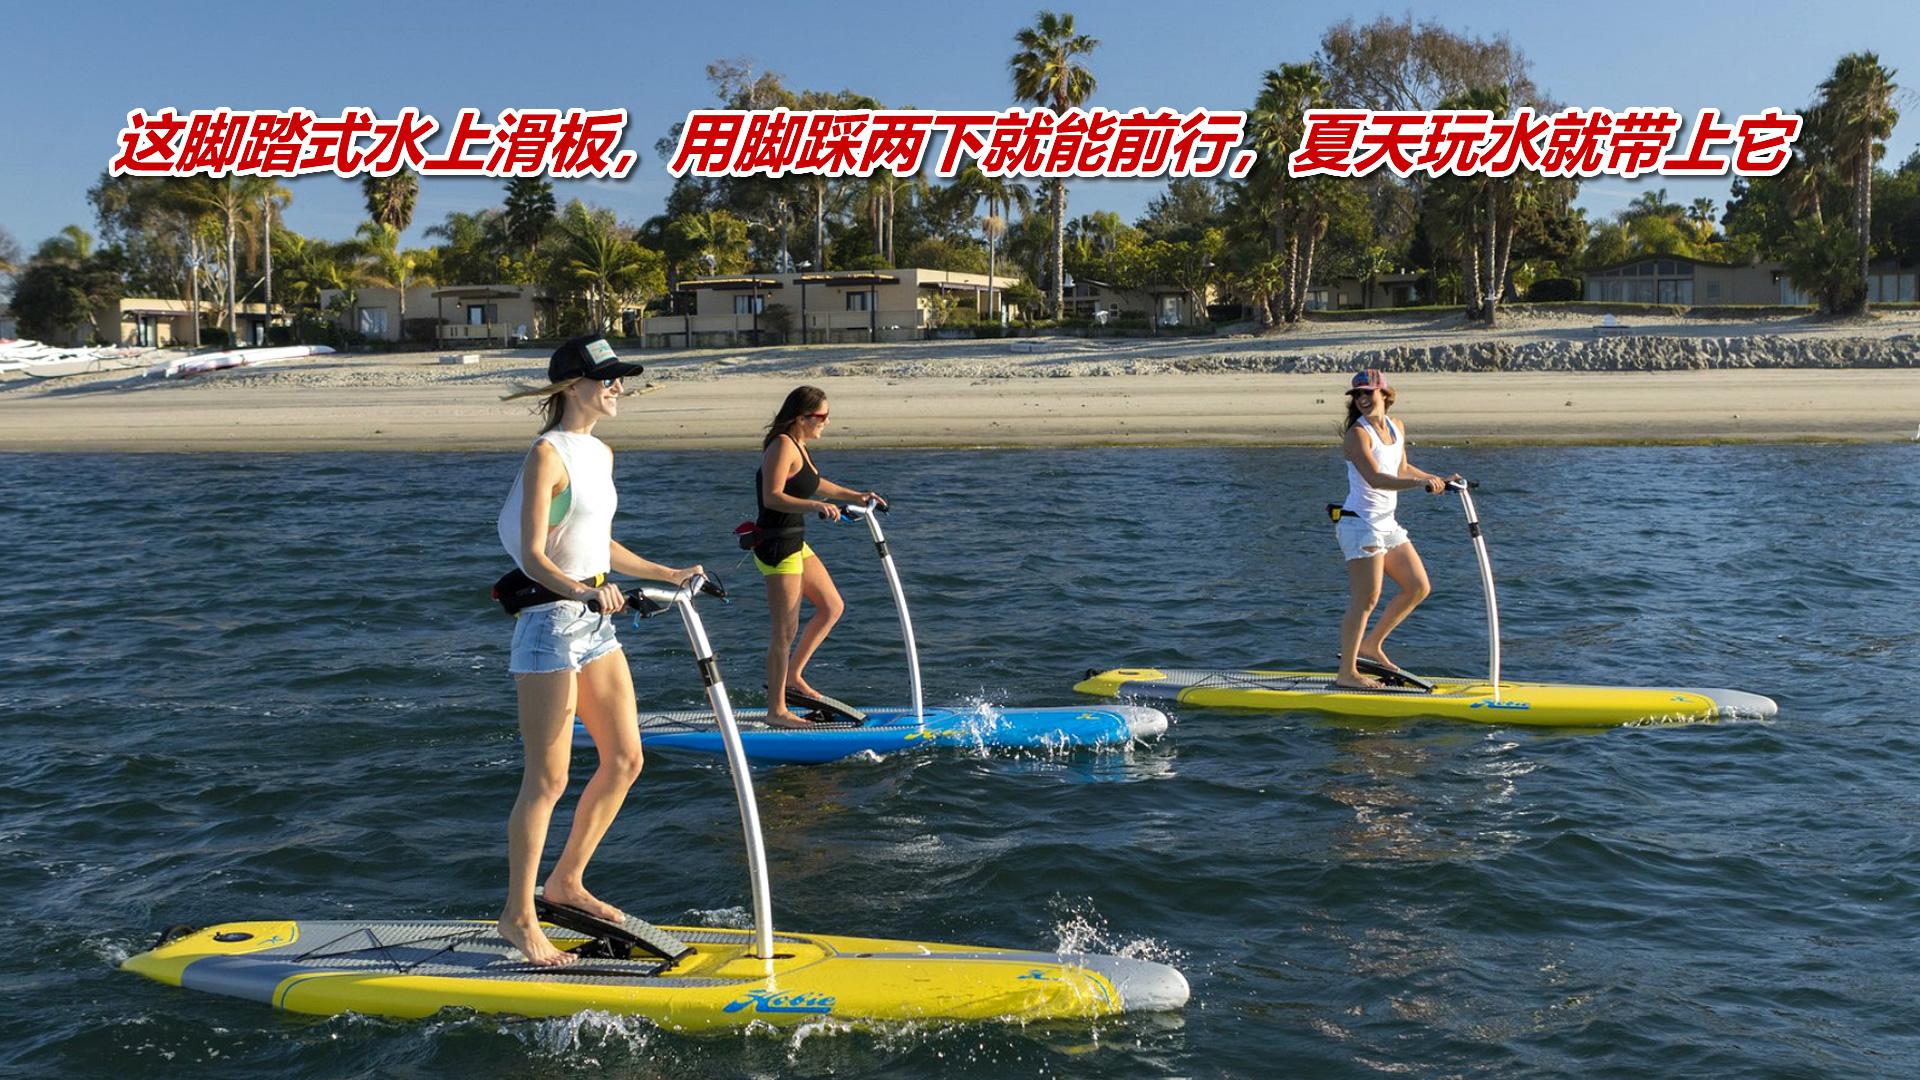 这脚踏式水上滑板，用脚踩两下就能前行，夏天玩水就带上它